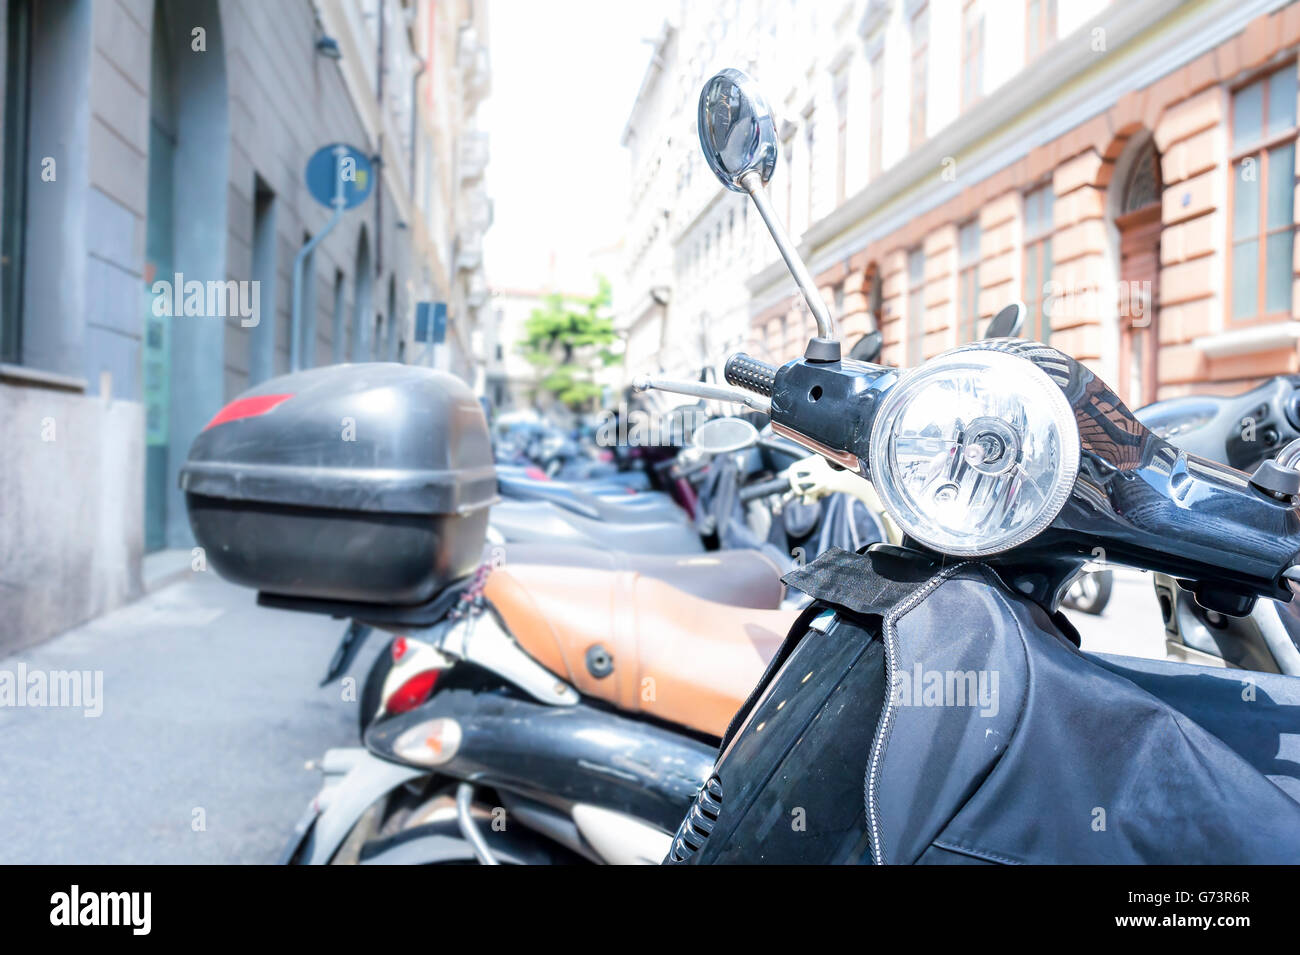 Moto, scooter moto parcheggiate in fila nella strada della citta'. Foto Stock